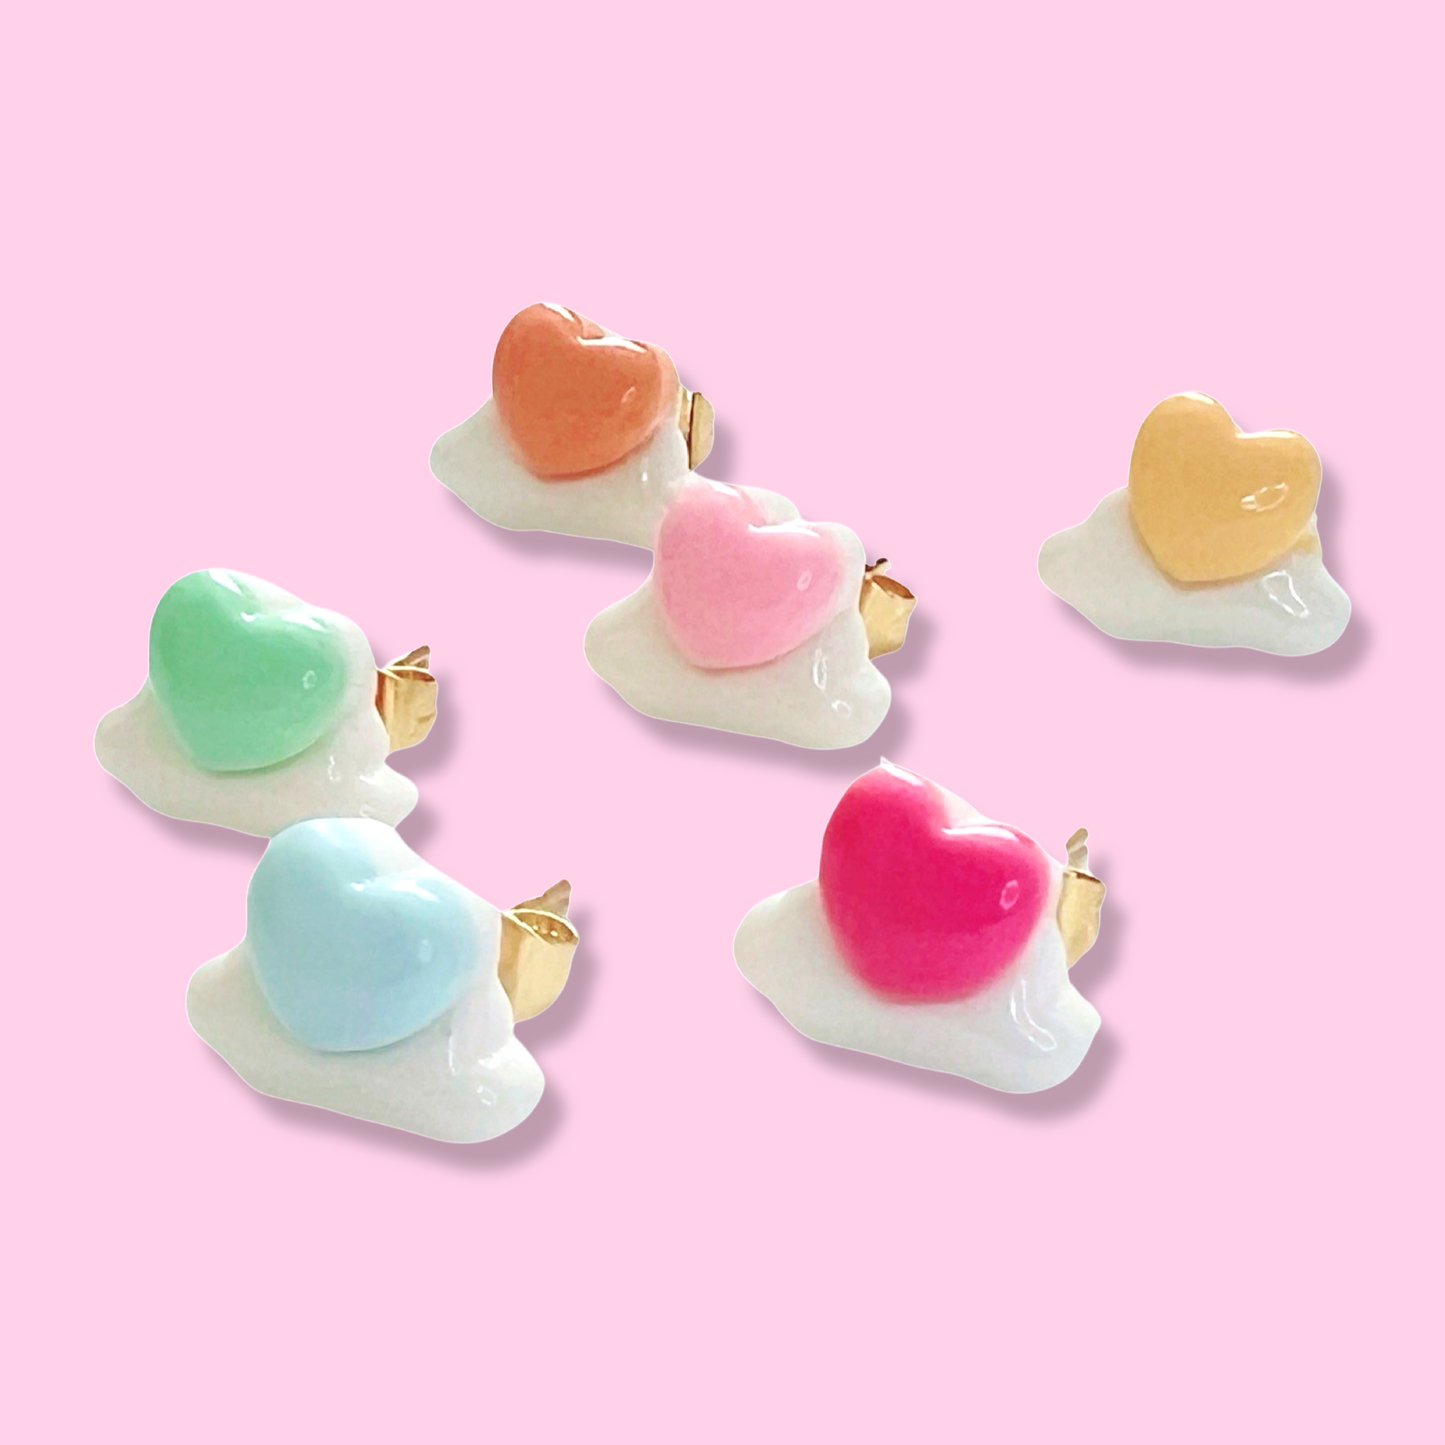 Pop Cutie Heart Clouds Mix & Match Earring pair  - 18K Gold plated